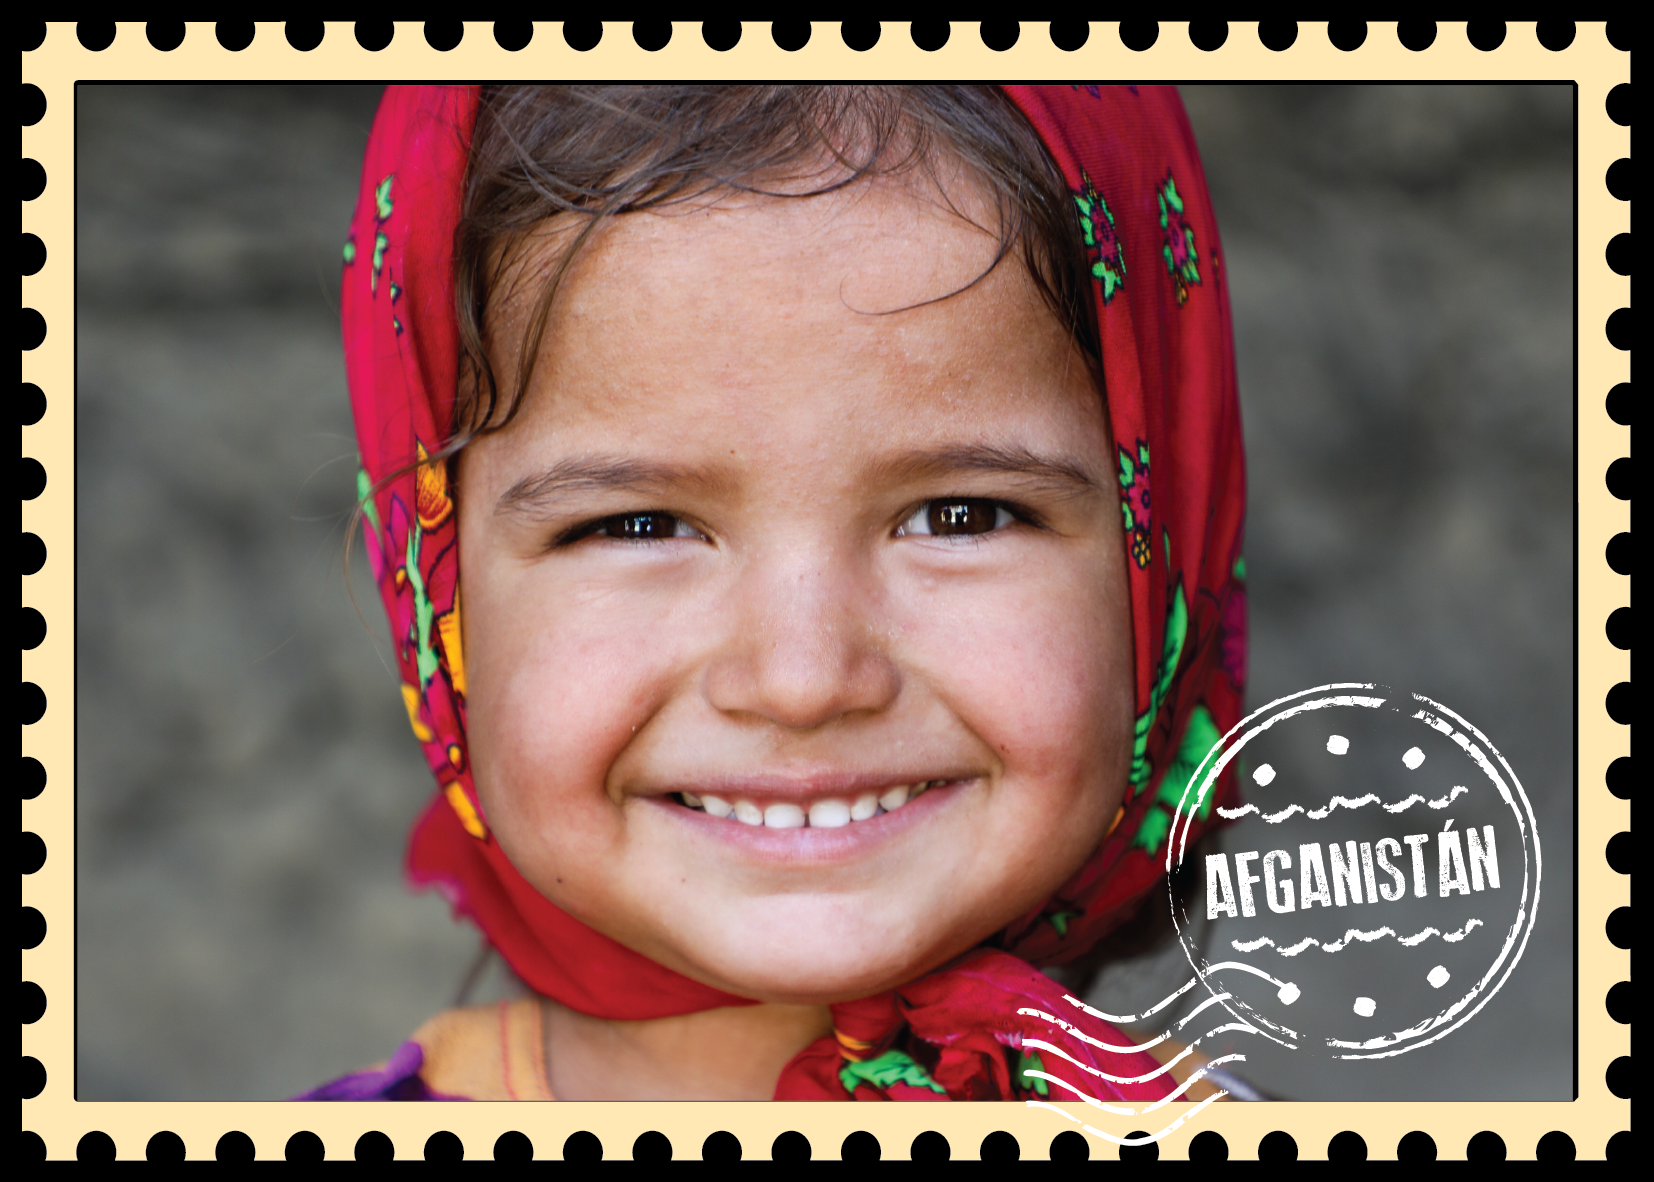 Te comparto esta postal de Afganistán, lugar al que junto con UNICEF logramos que más de 1 millón de niños y niñas accedieran a educación, y cerca de 650.000 recibieran agua potable, servicios de higiene e instalaciones de saneamiento. En Afganistán, #ParaCadaInfancia PROTECCIÓN